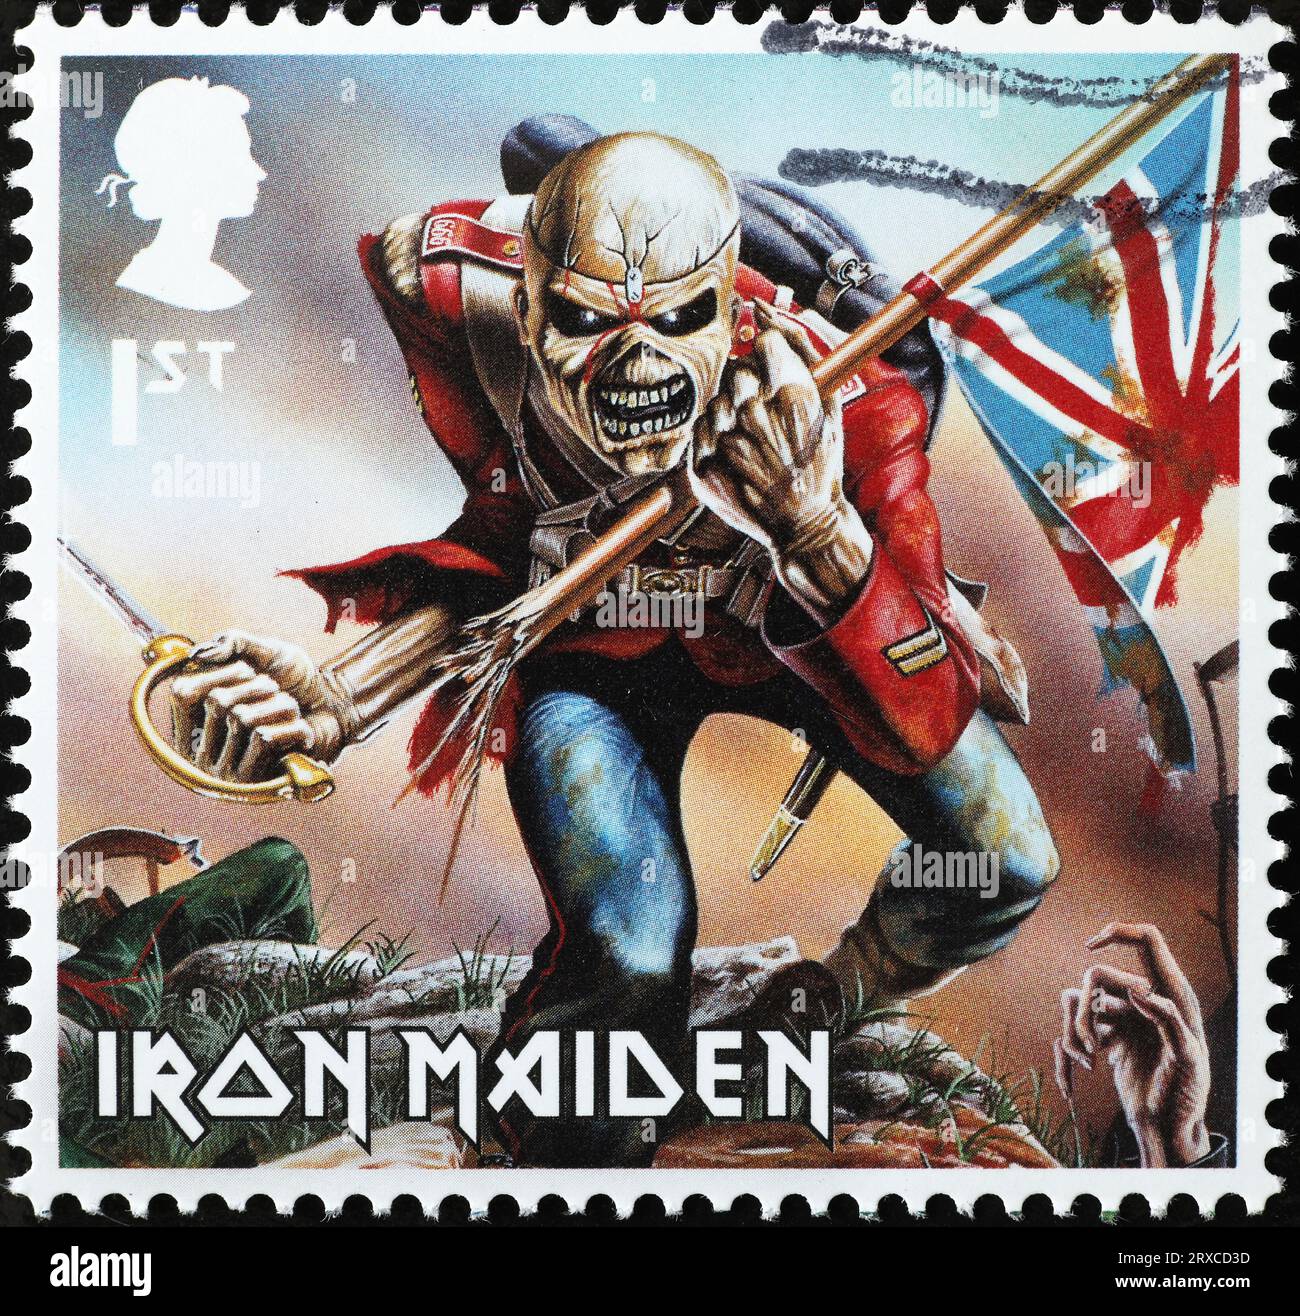 Album 'Invasion of rarities' by Iron Maiden on british stamp Stock Photo